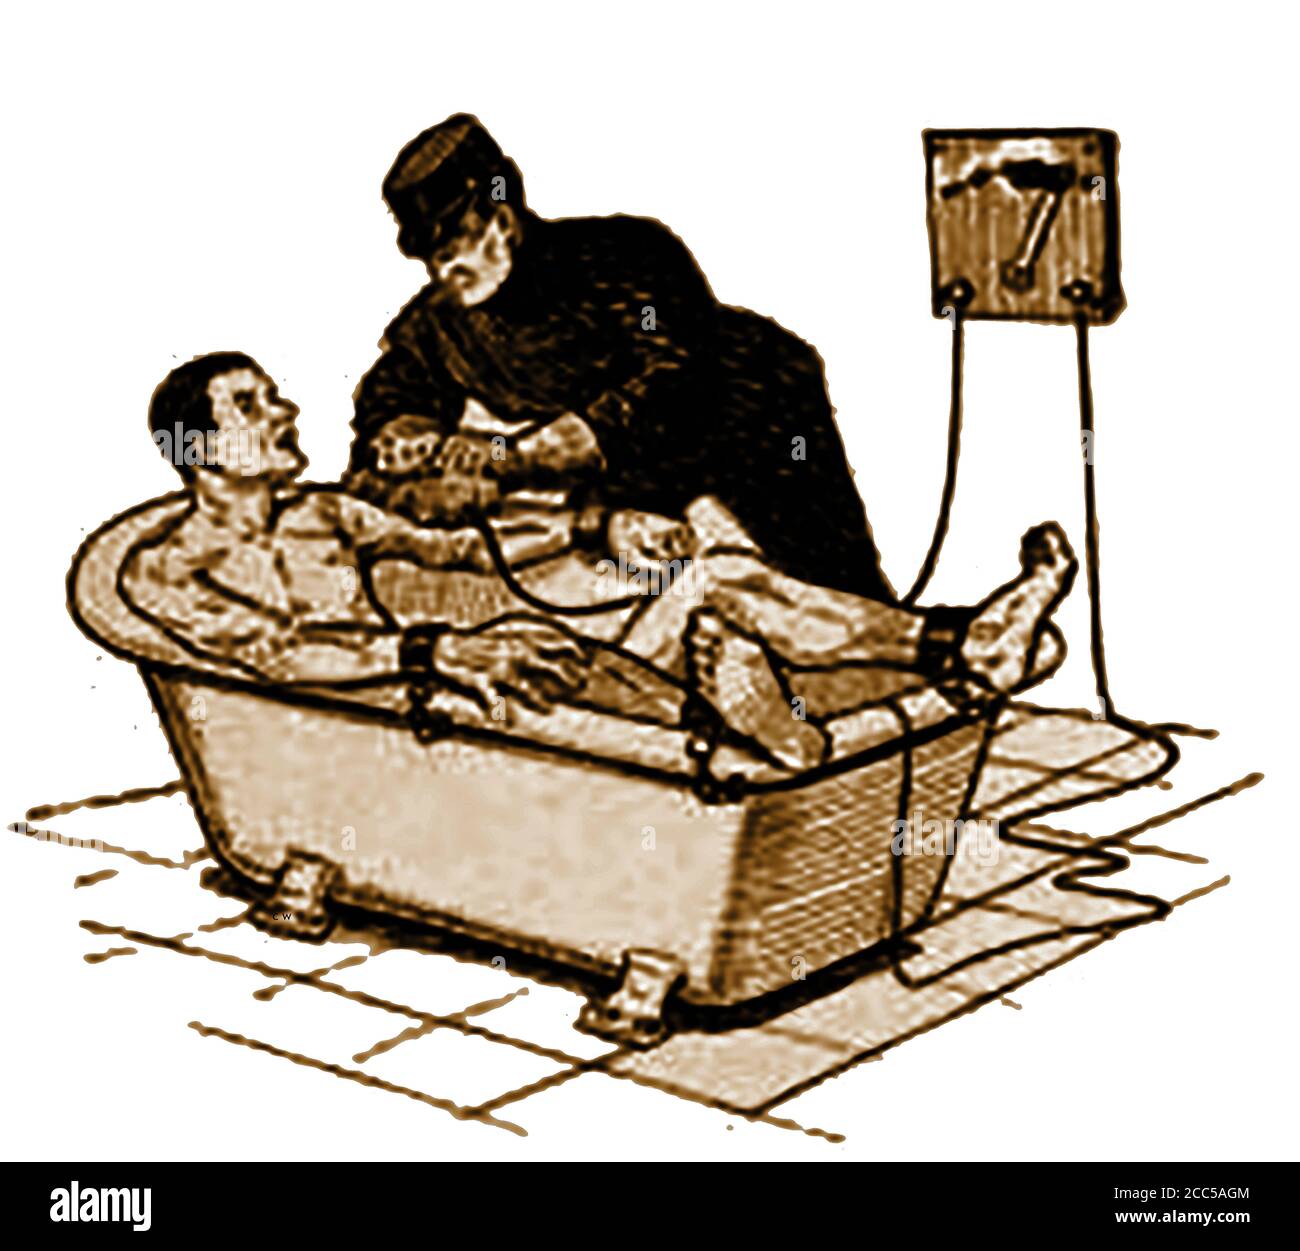 États-Unis d'Amérique - crime & châtiment 1910 - l'oiseau de bourdonnement - autrefois utilisé dans le pénitencier de l'Ohio (et peut-être ailleurs) pour punir des criminels ou extraire des aveux en utilisant un bain d'eau et d'électricité. (illustration 1910) Banque D'Images